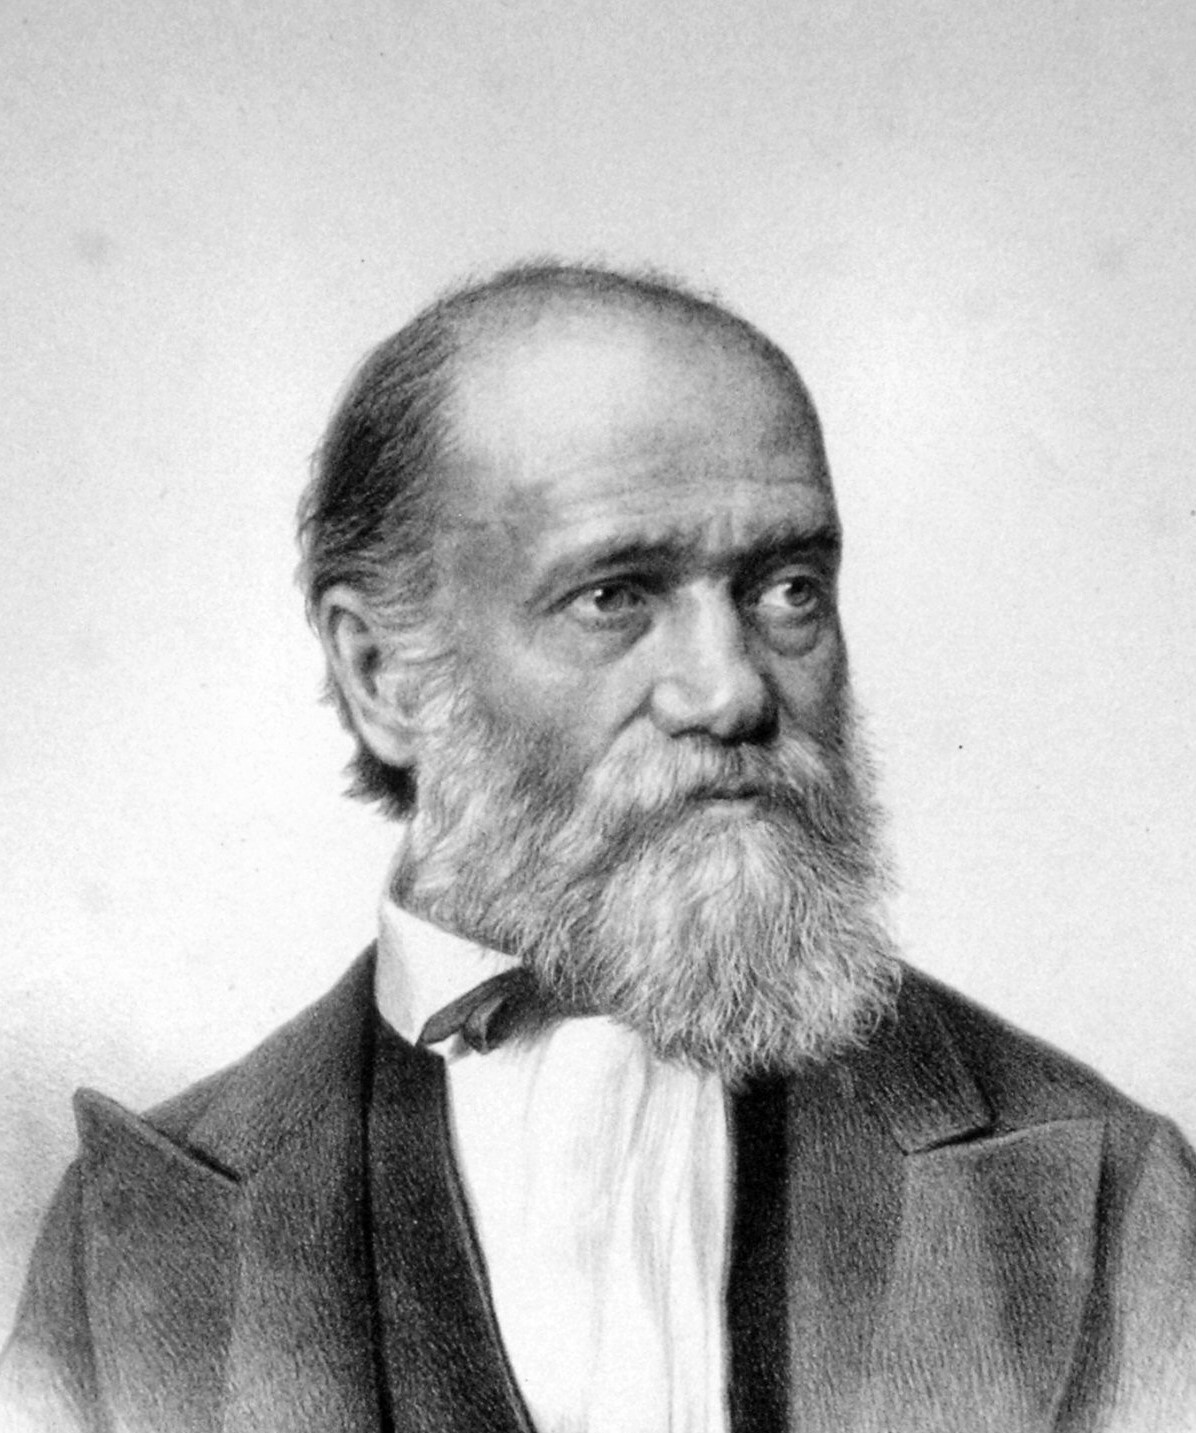 Eduard Ritter von Engerth